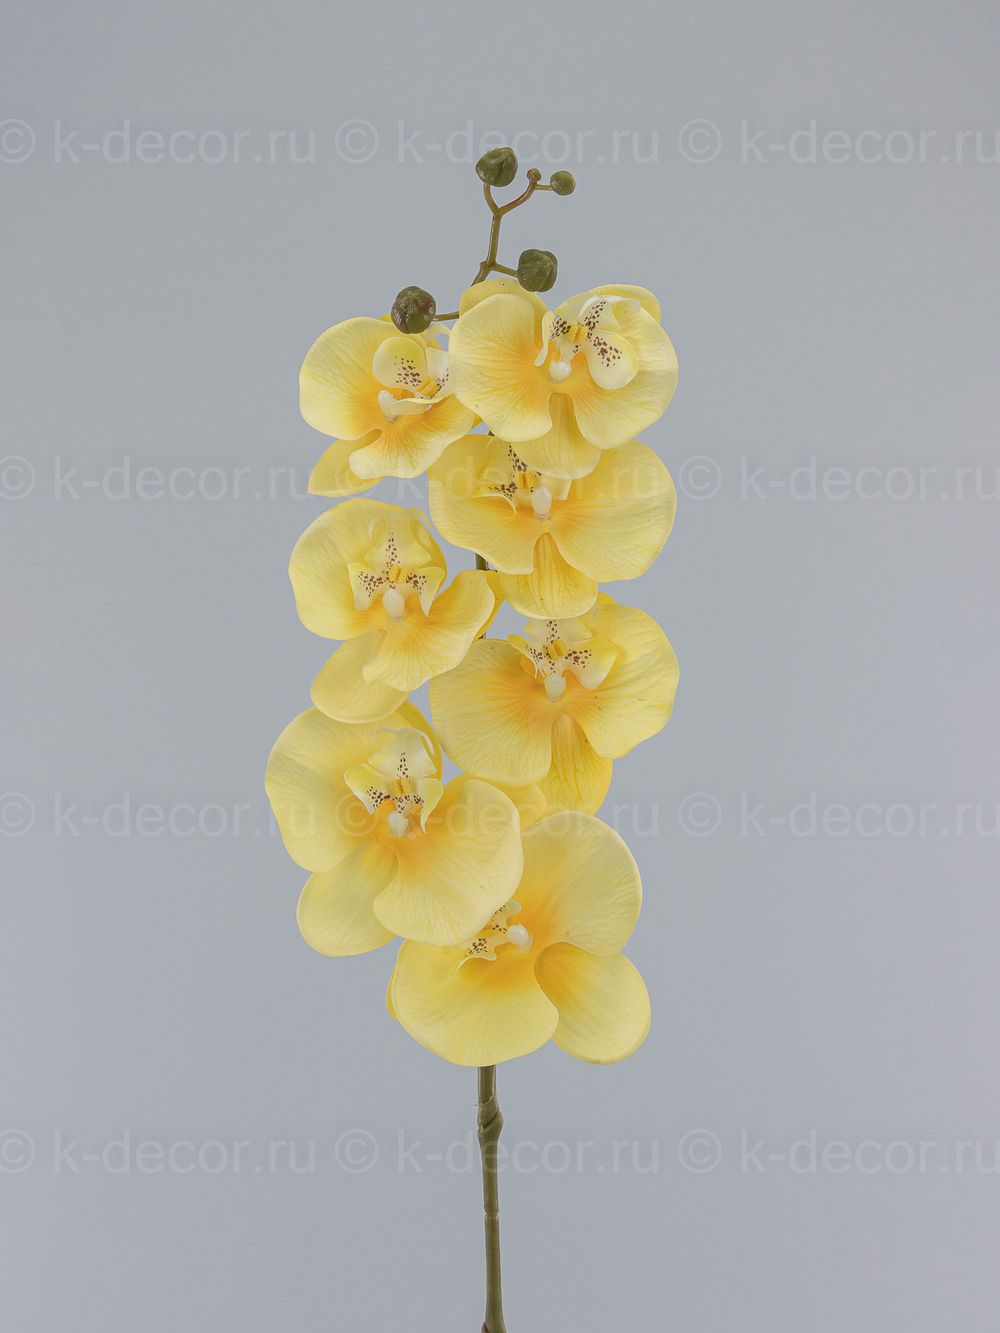 Ветка орхидеи Малибу